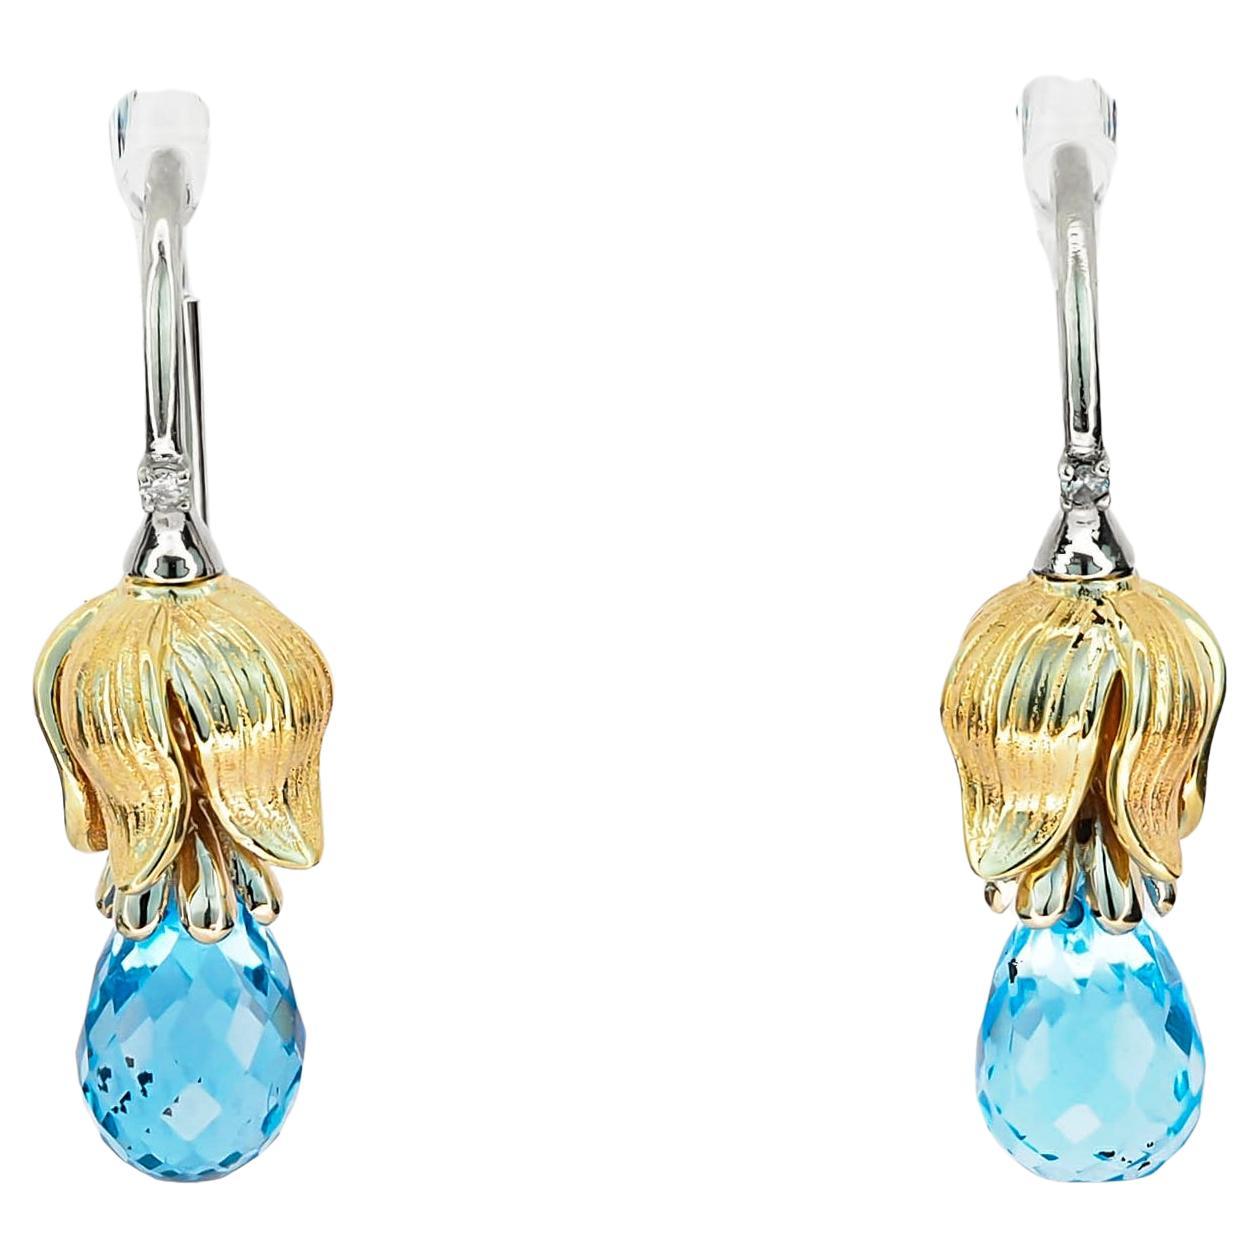 Topaz earrings in 14k gold. Briolette topaz earrings. Flower earrings